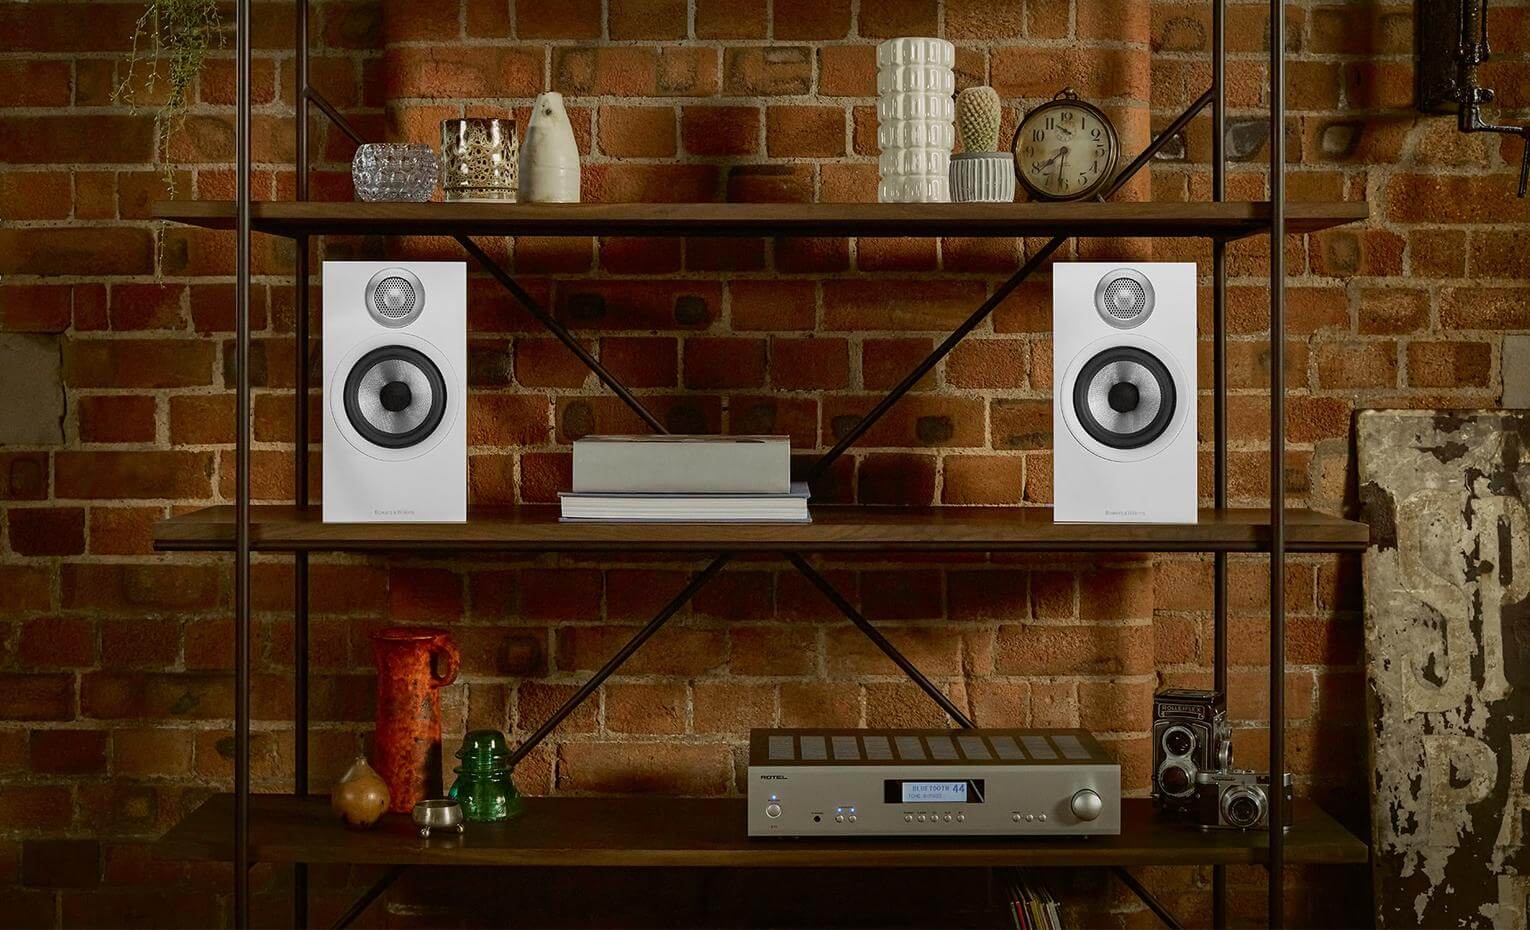 تنظیم اسپیکر استریو برای دریافت بهترین صدا | how to set up stereo speakers